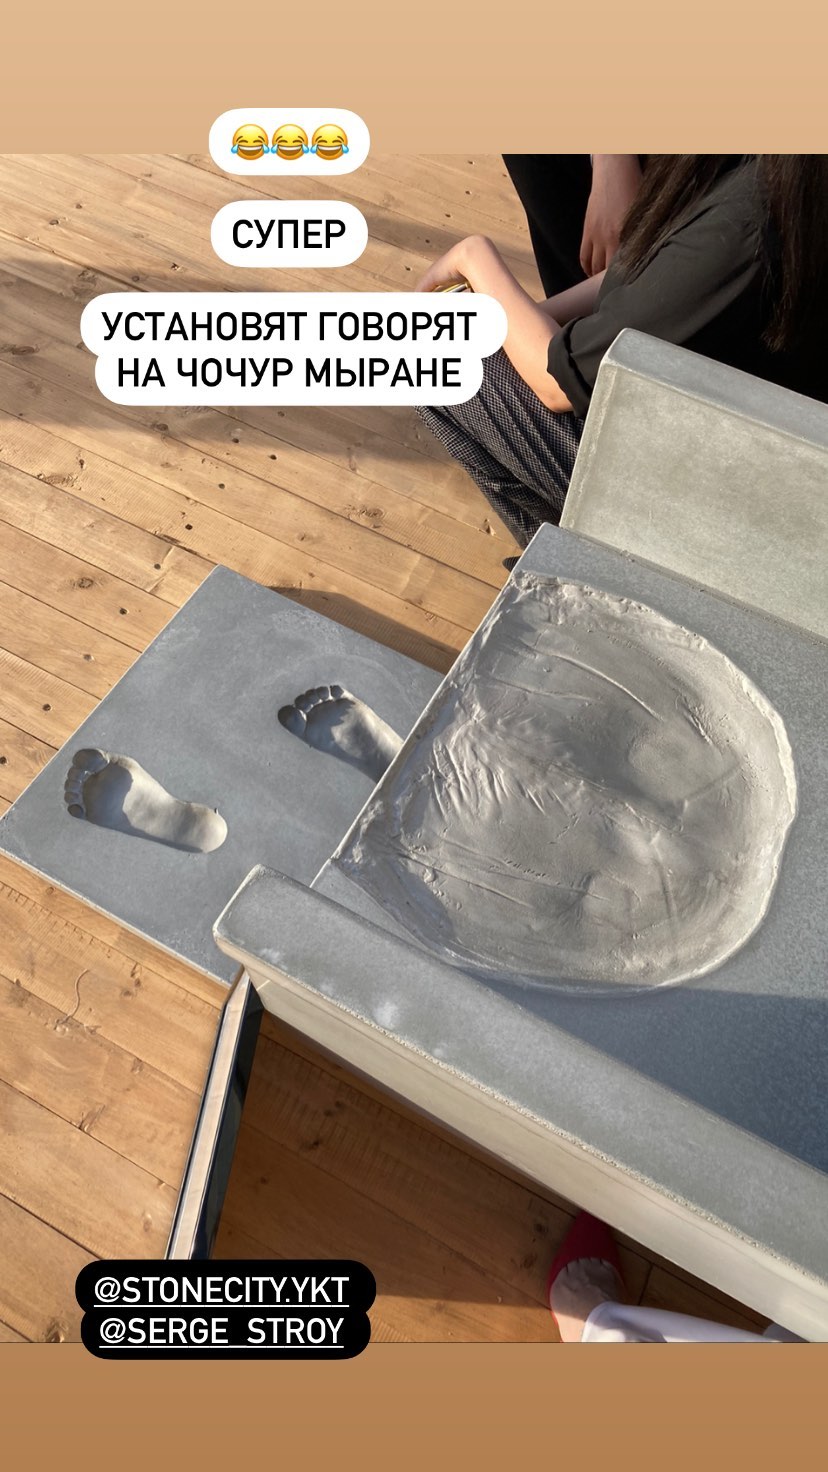 Фотофакт: Якутску подарили символичный памятник с отпечатком чей-то задницы